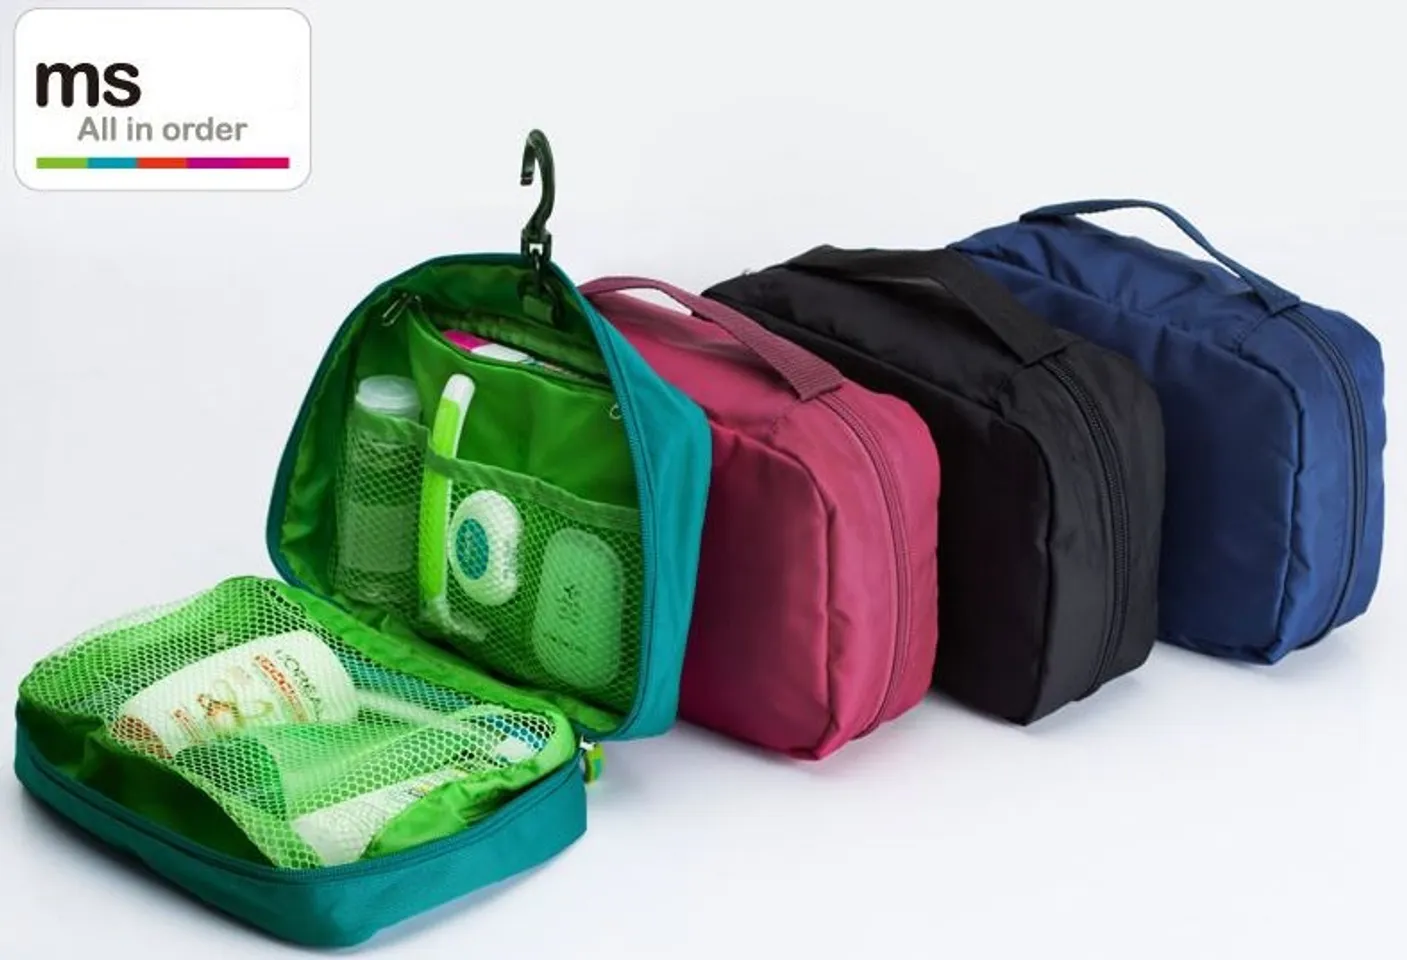 Túi đựng đồ dùng cá nhân Msquare dùng để đựng các loại mỹ phẩm, hay có thể để các vật dụng cá nhân khi bạn đi du lịch công tác